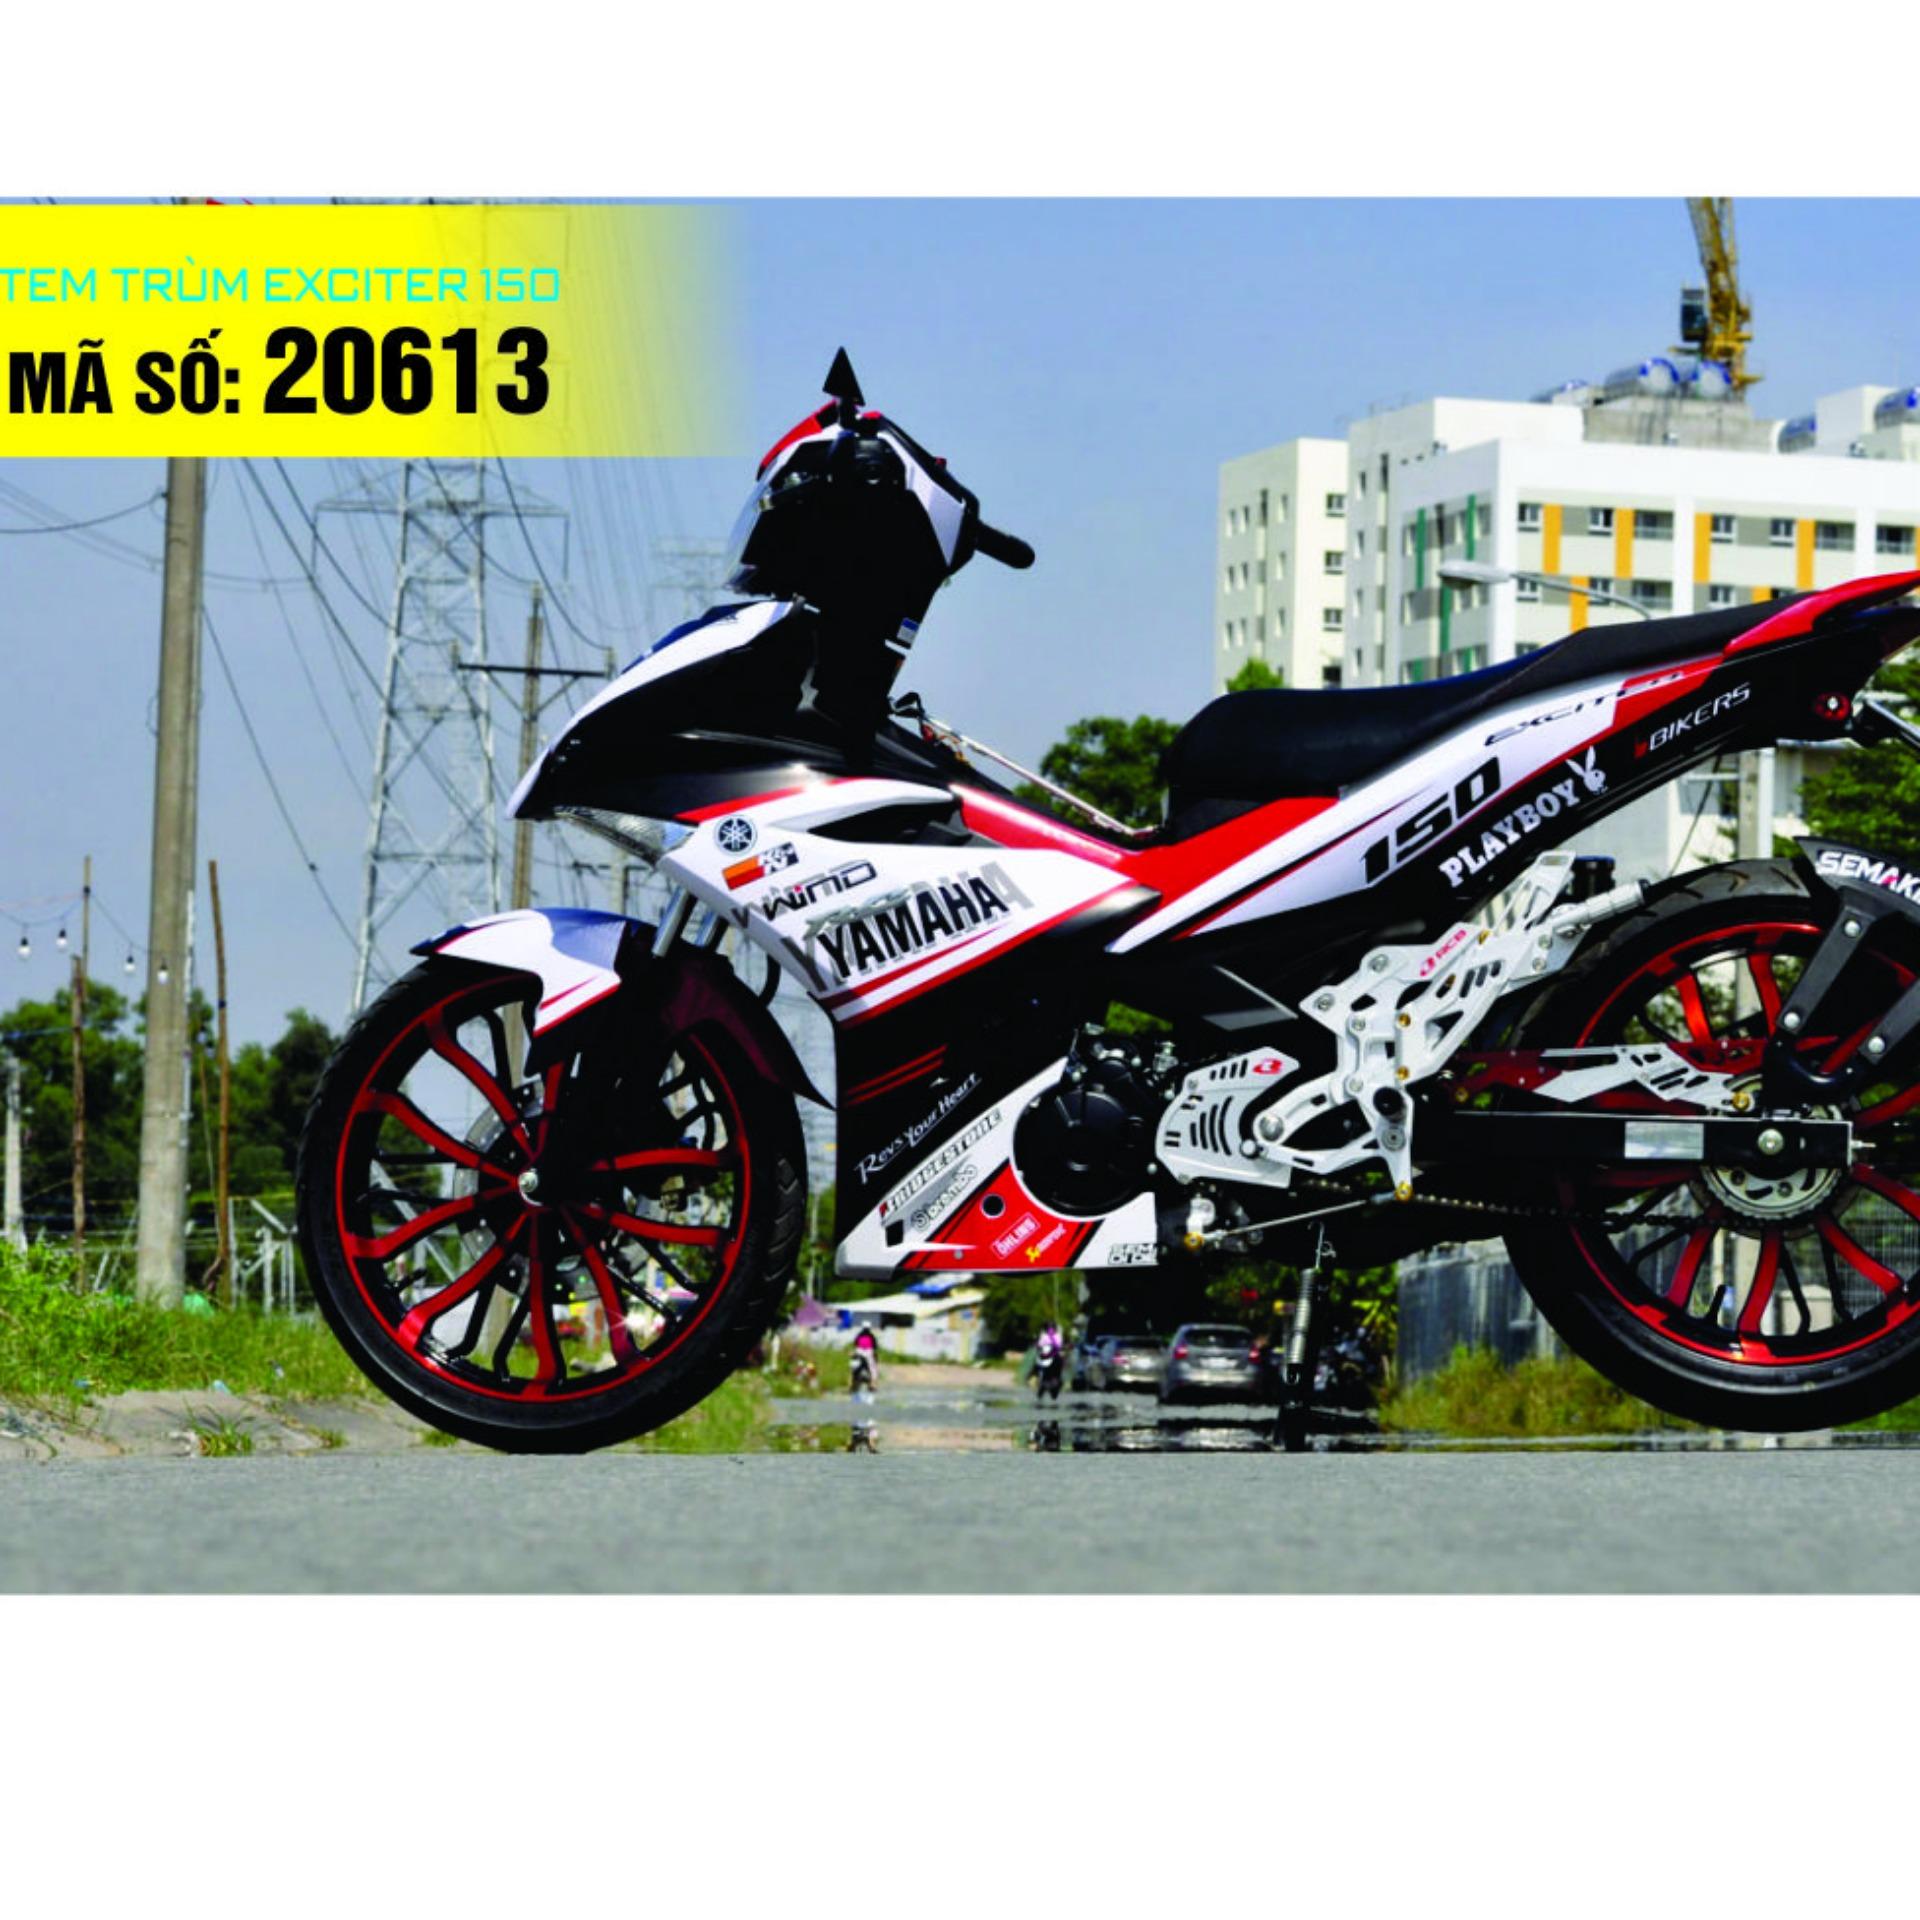 Exciter 135 phiên bản 2013 côn tự động màu đỏ đen ở Hà Nội giá 185tr MSP  995244